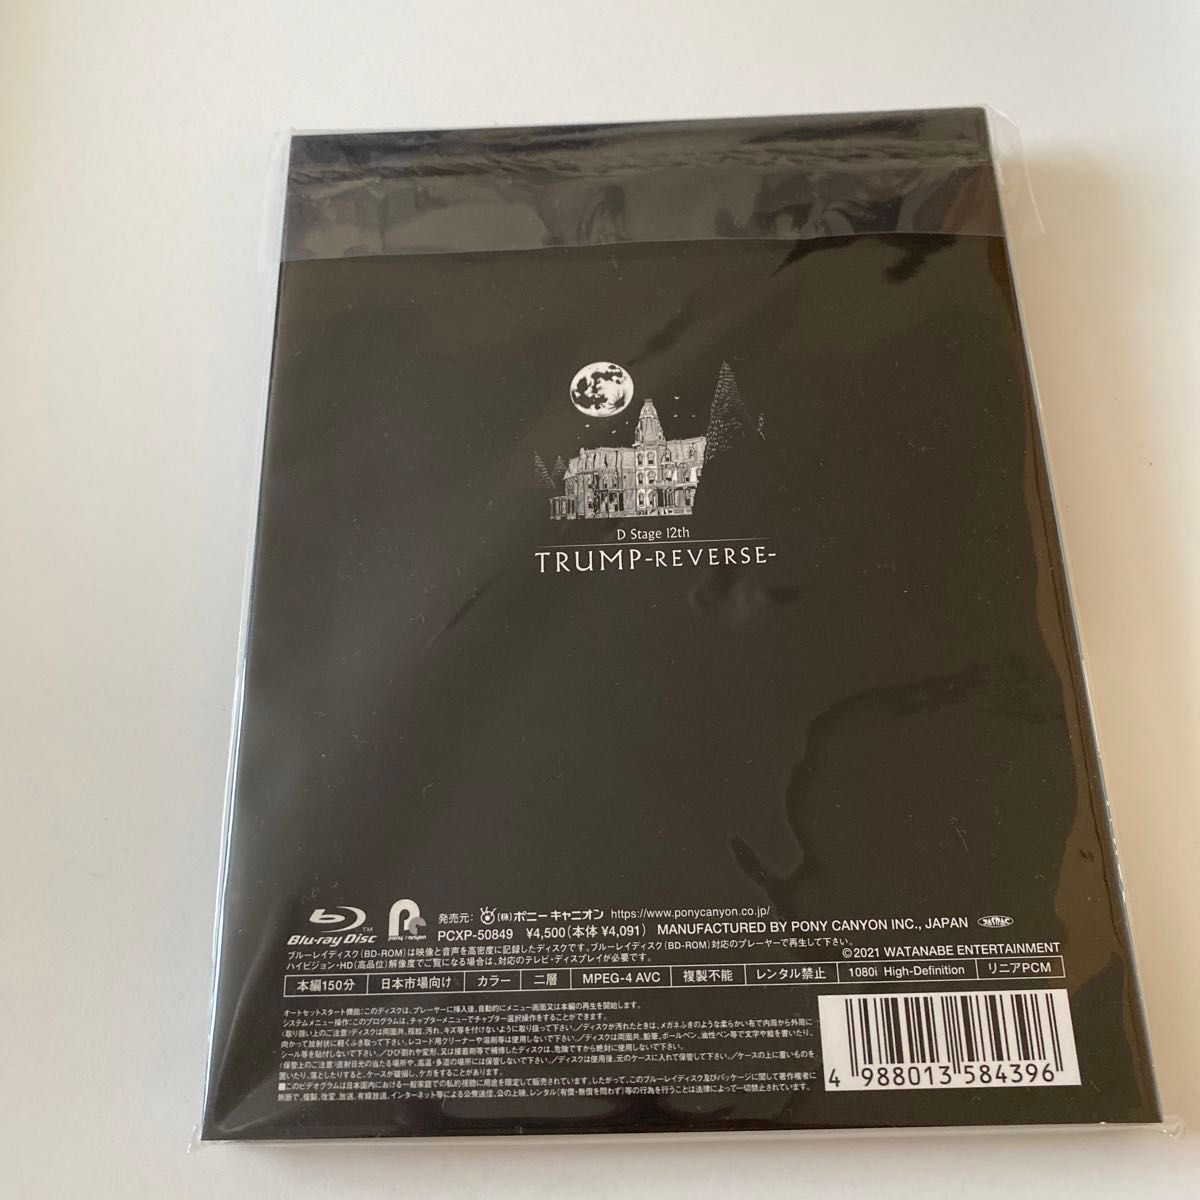 [国内盤ブルーレイ] TRUMP series Blu-ray Revival Dステ 12th 「TRUMP」 REVERSE